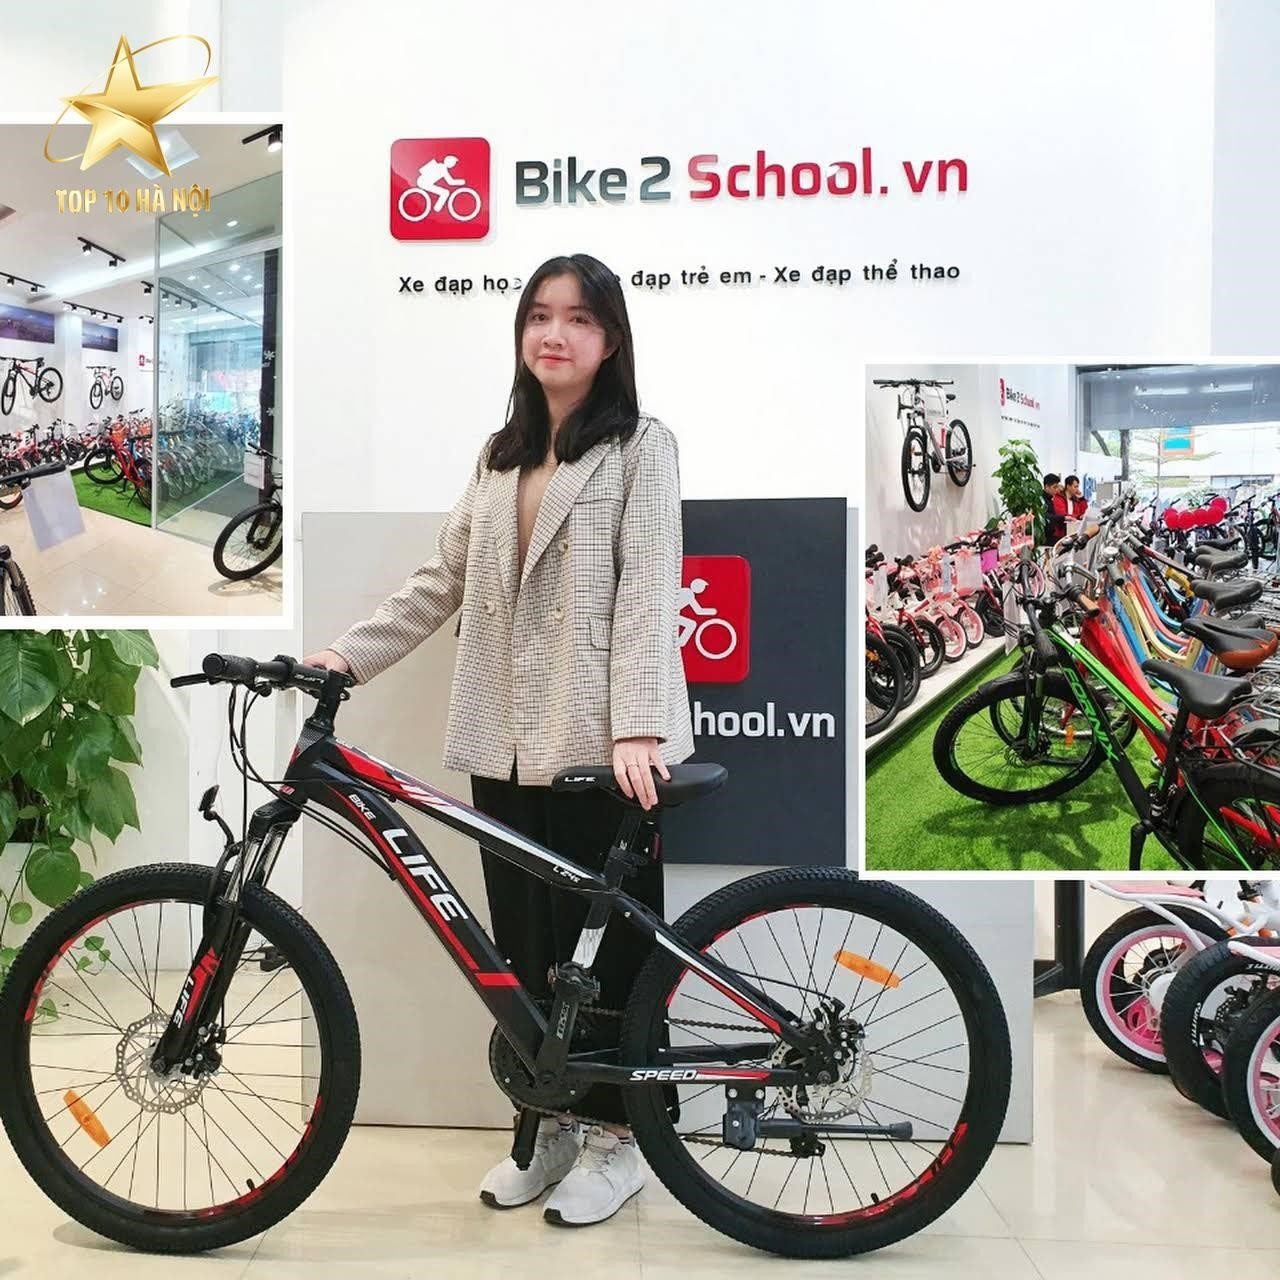 7. Có thể mua xe đạp trẻ em ở Hà Nội tại Bike2School.